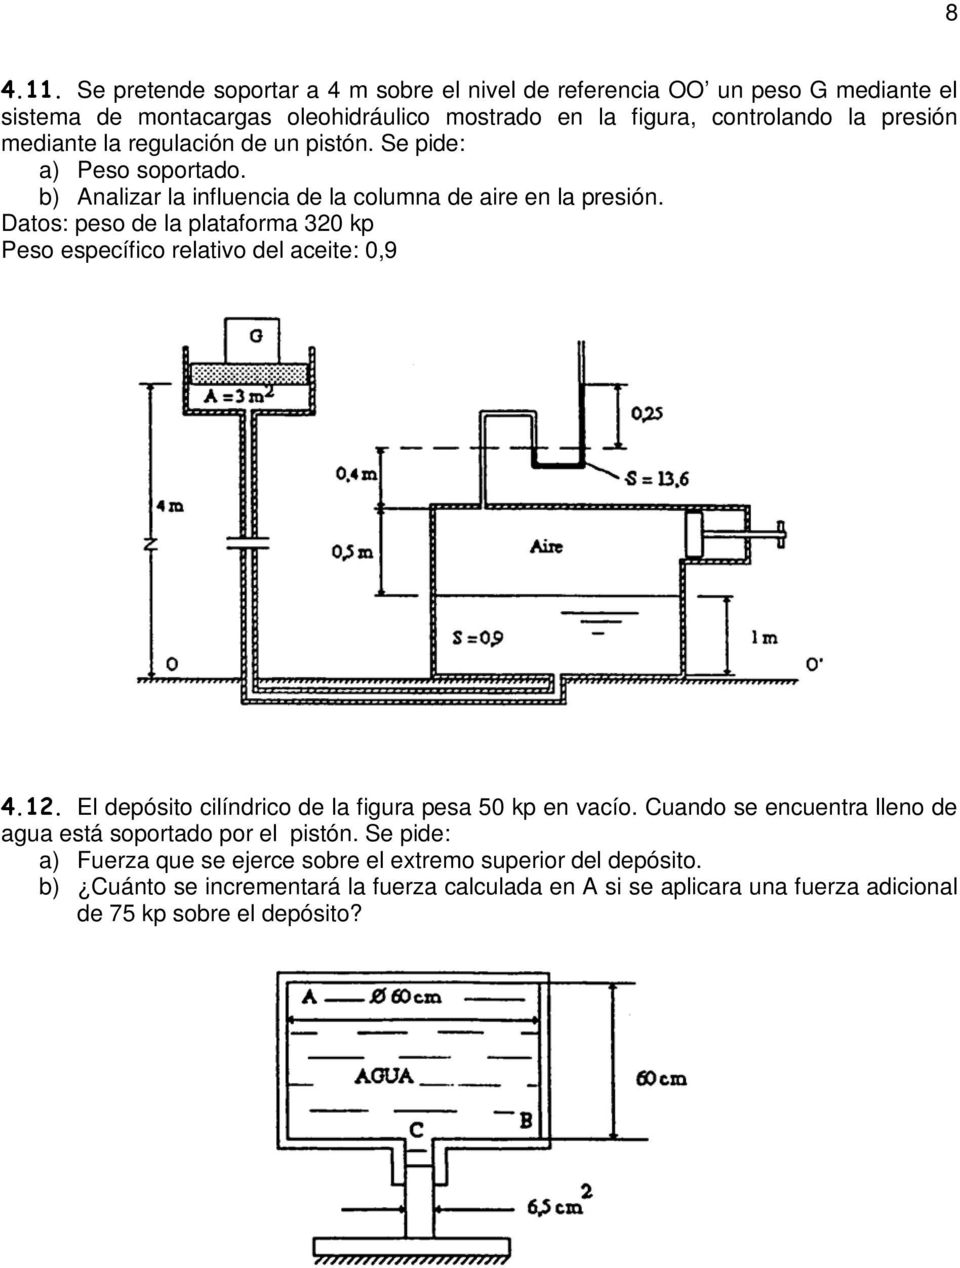 mediante la regulación de un pistón. Se pide: a) Peso soportado. b) Analizar la influencia de la columna de aire en la presión.